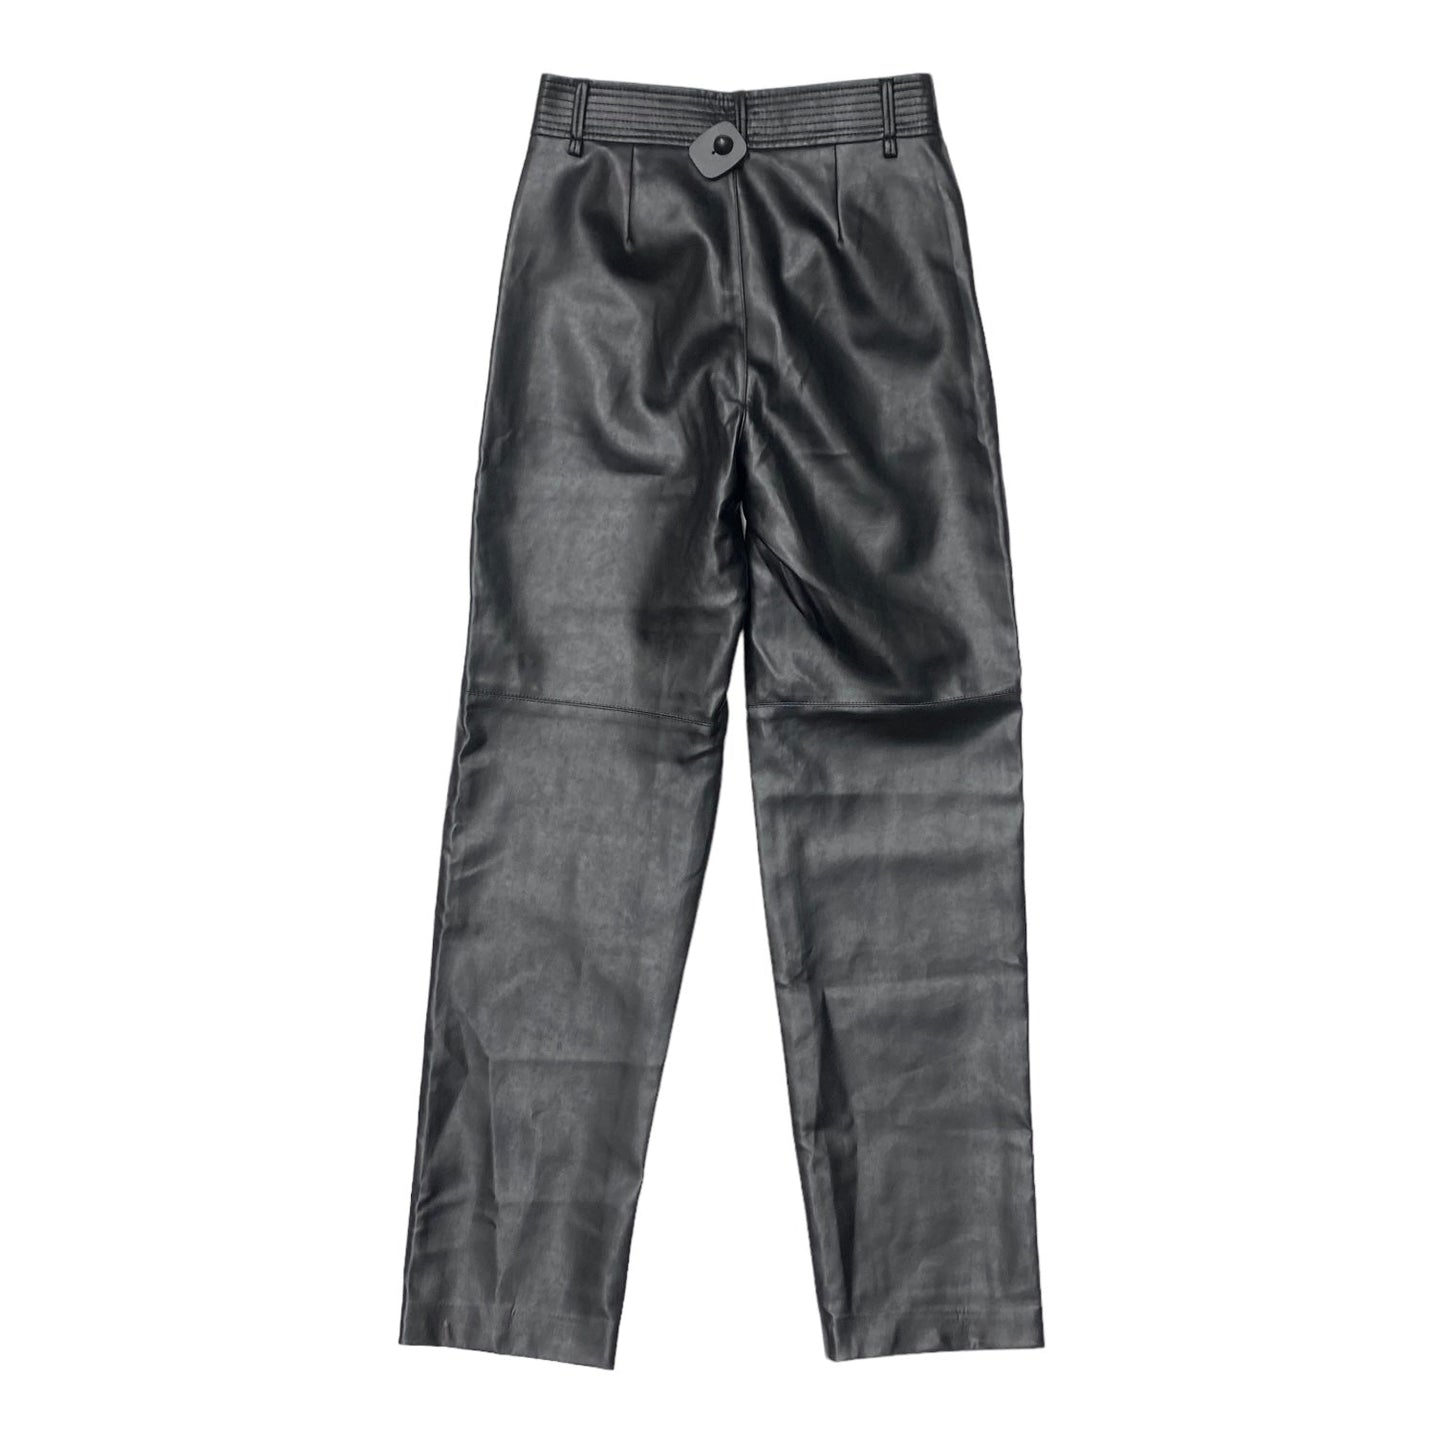 Black Pants Designer Wilfred, Size 8